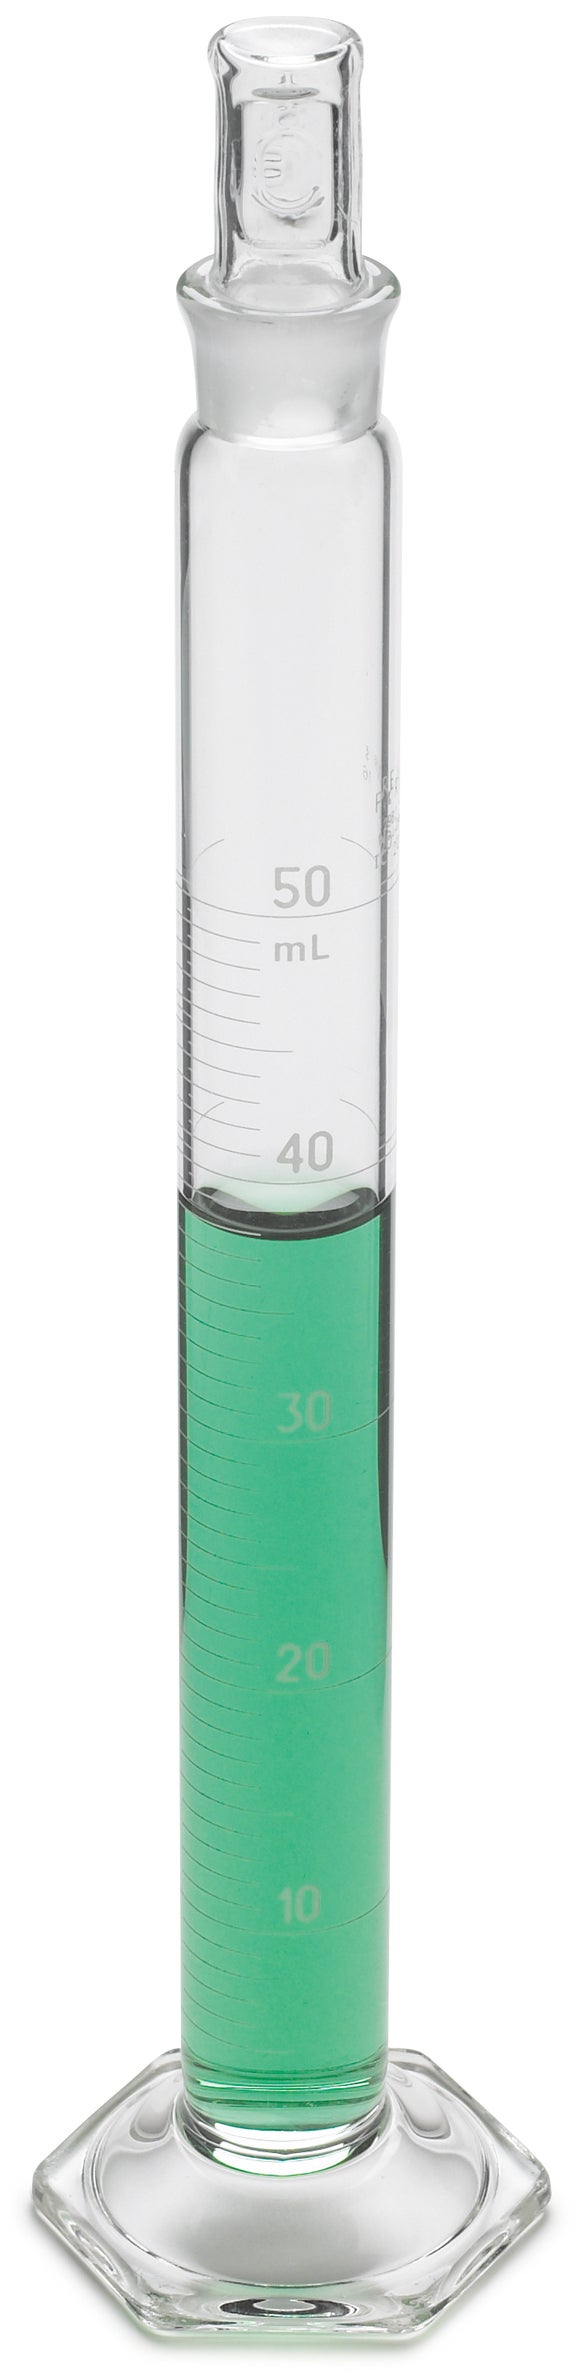 Zylinder, mit Skala, Mischen, Glas; 10 mL ± 0,1 mL, Teilung 0,2 mL; Glasstopfen Nr. 13